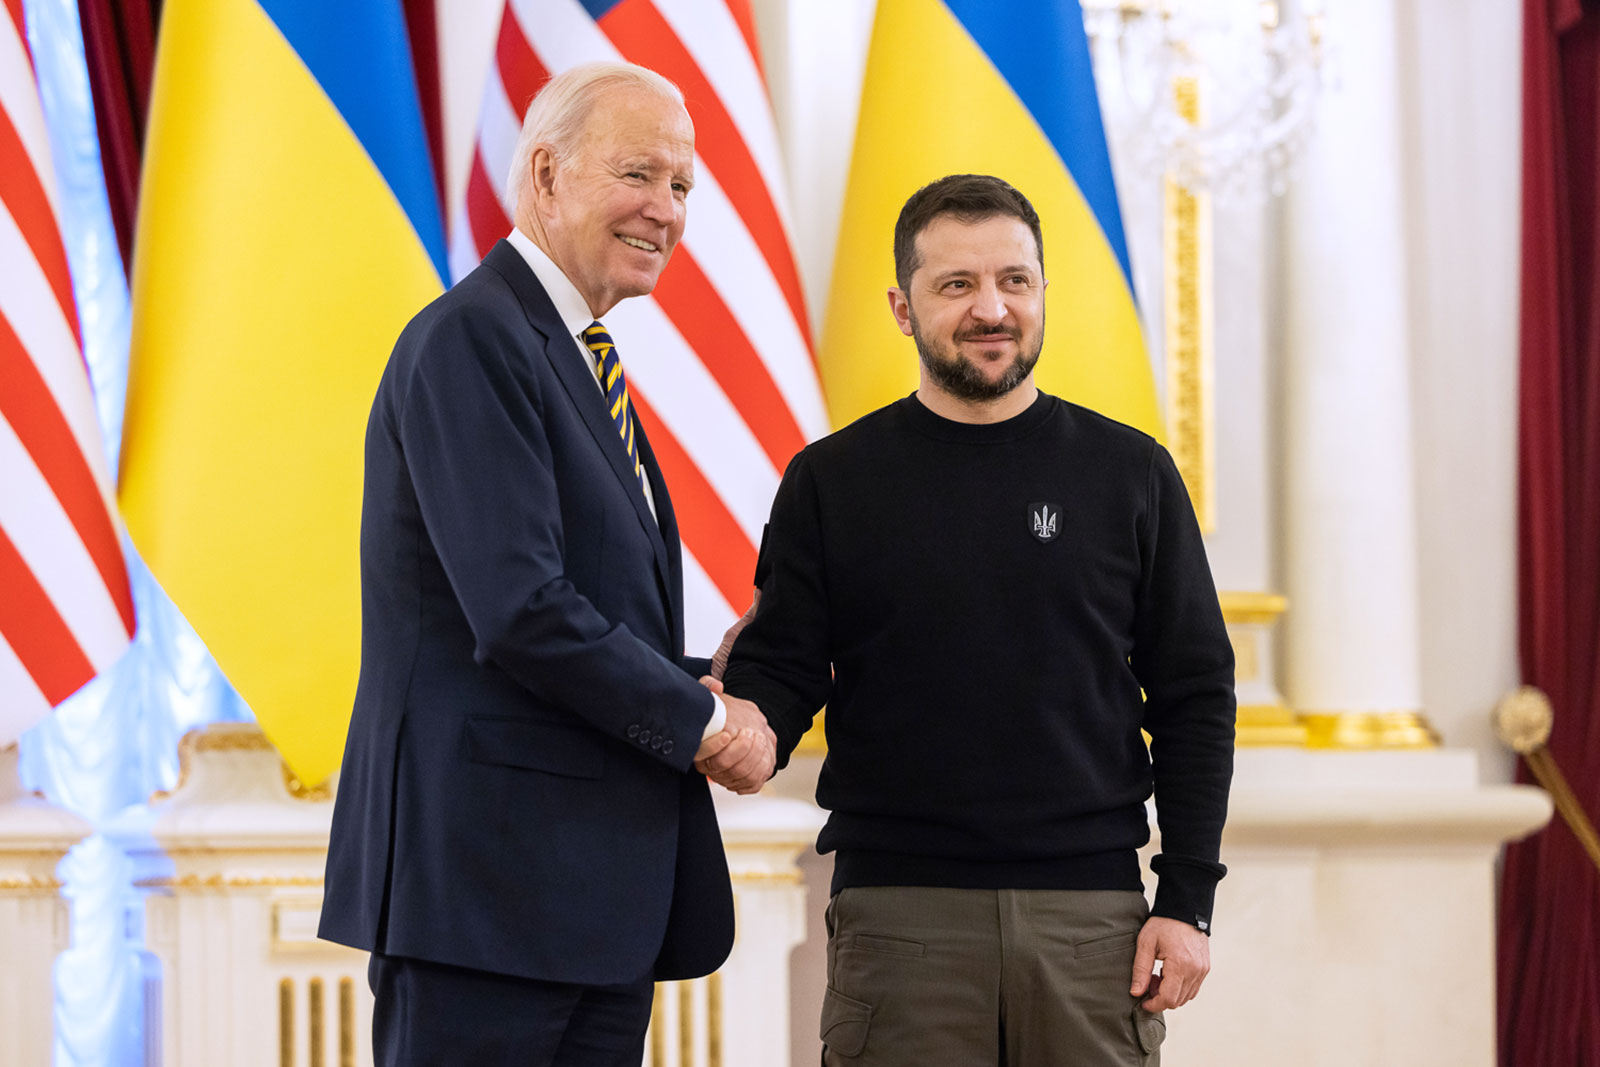 El presidente estadounidense Joe Biden se reúne con el presidente ucraniano Volodymyr Zelensky en el Palacio Presidencial de Ucrania en Kiev, Ucrania, el 20 de febrero. 